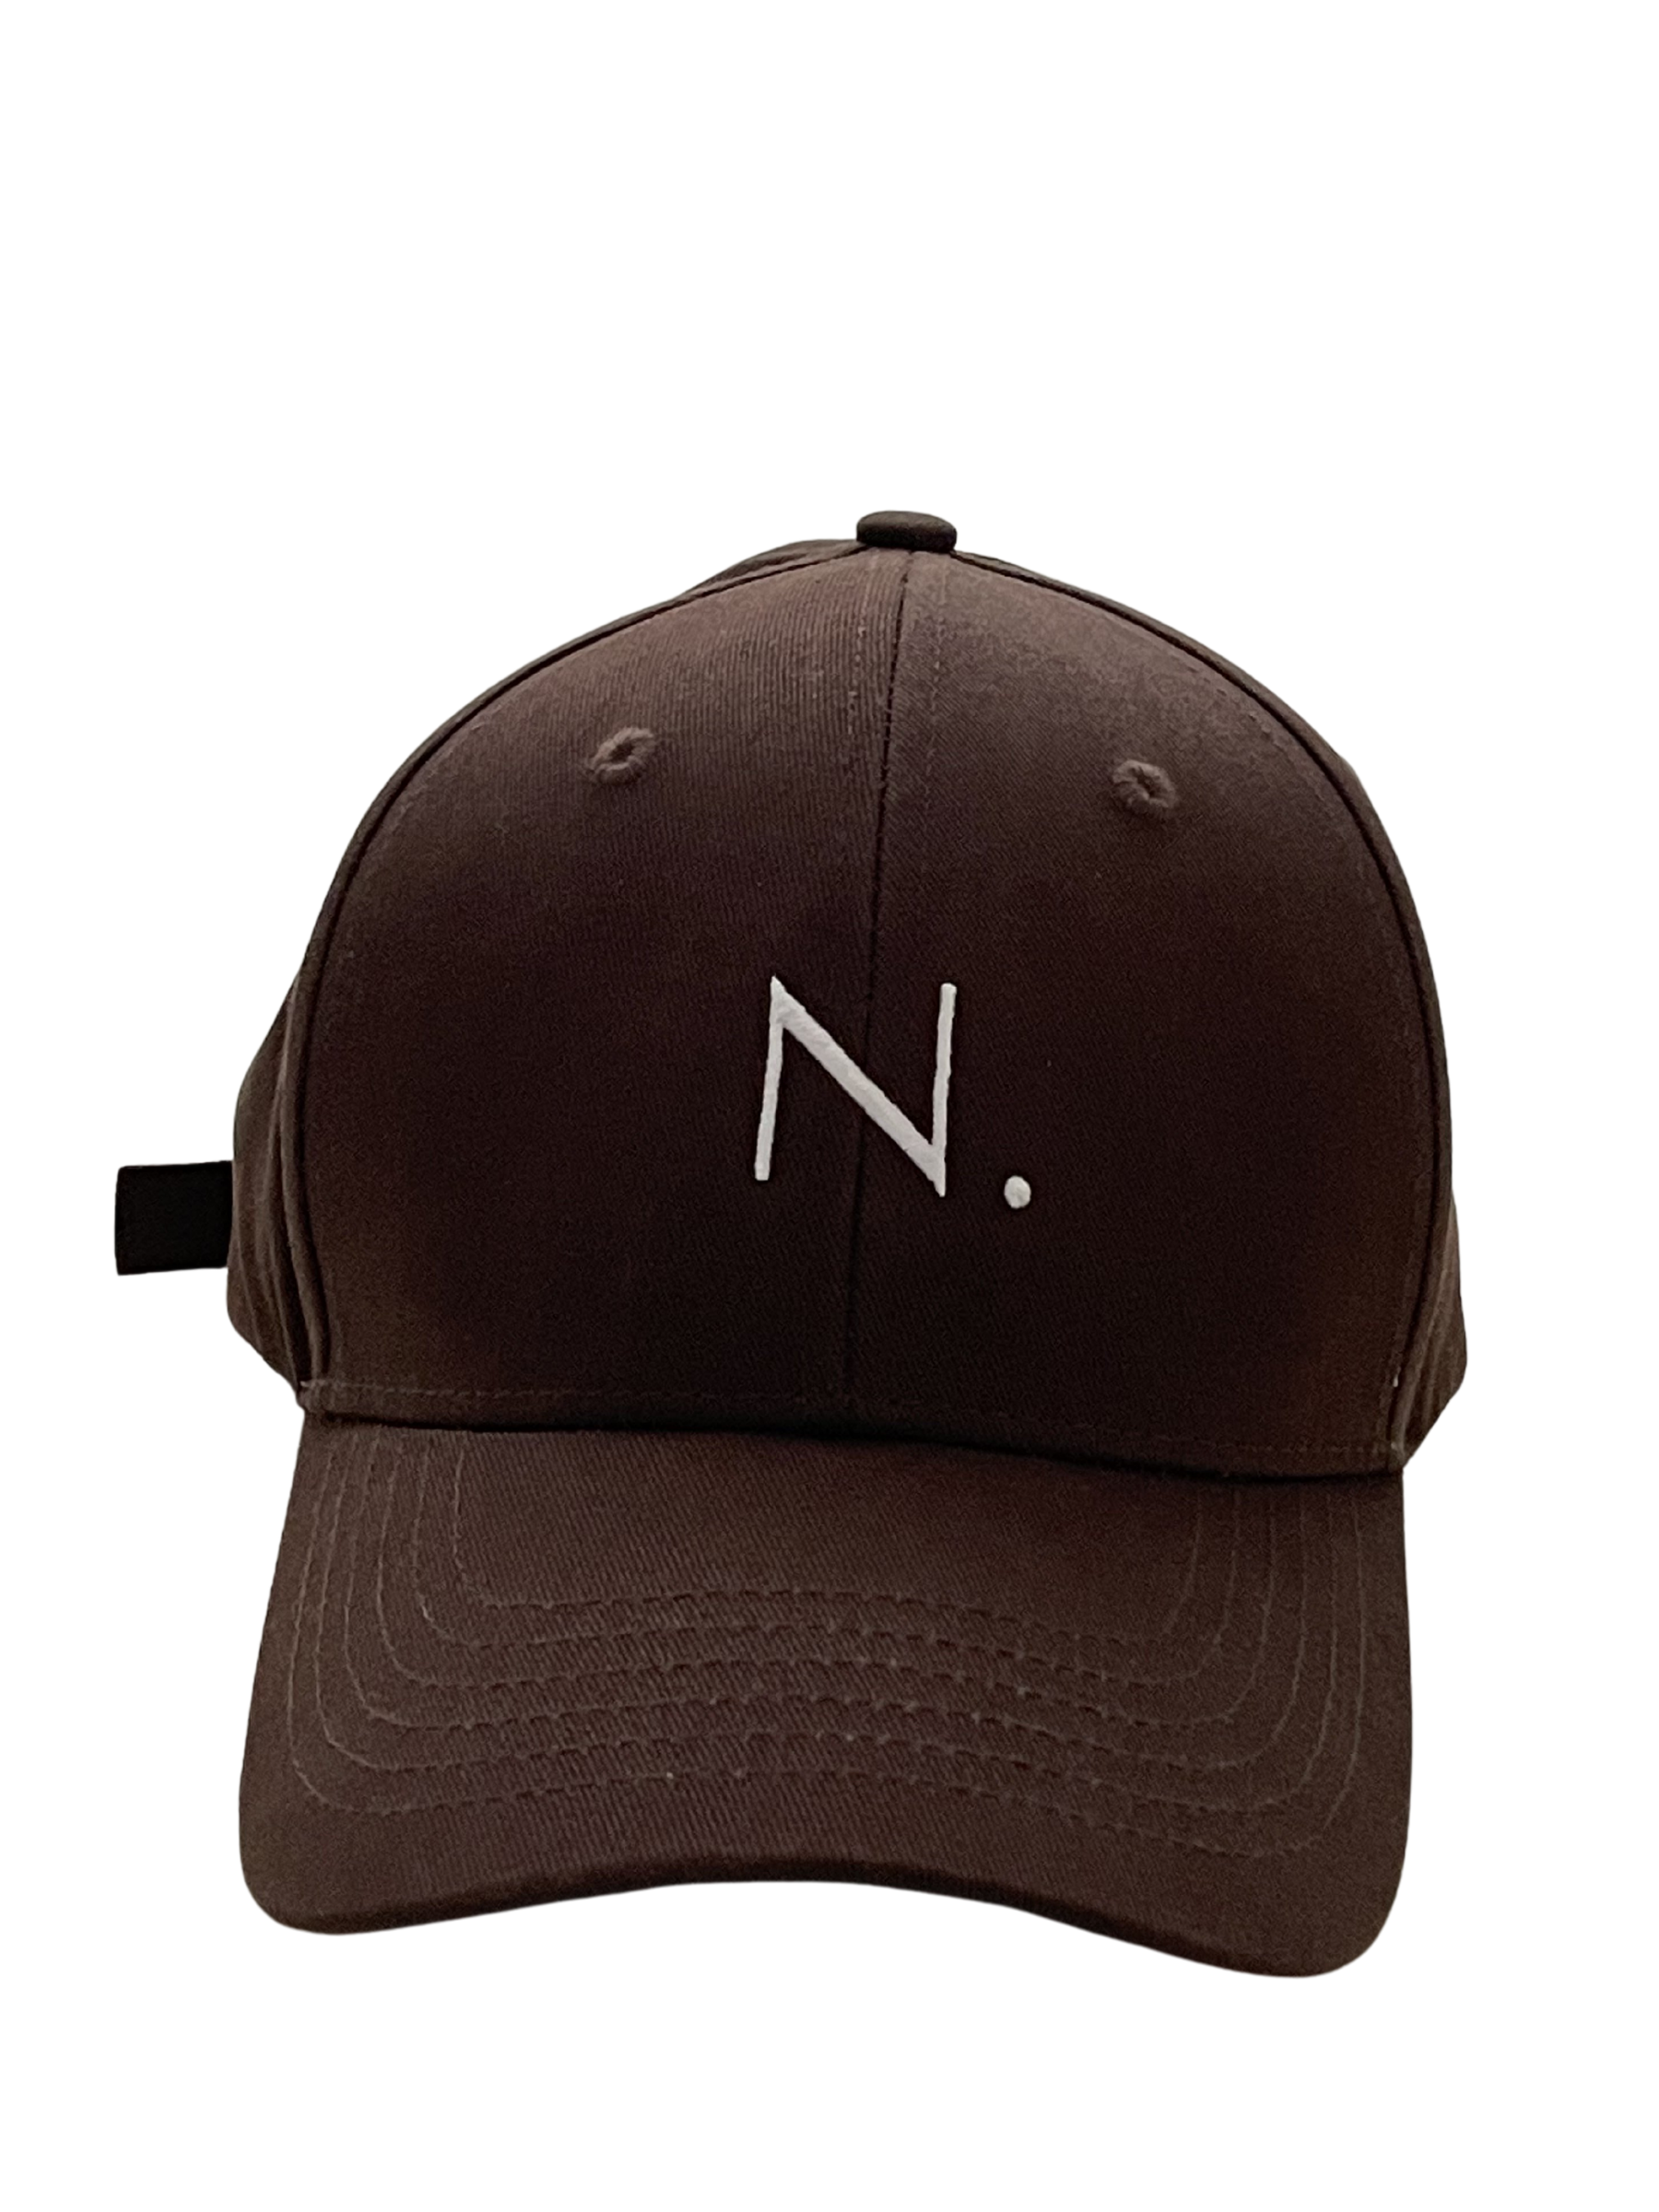 N. BALL CAP - SPICED BROWN